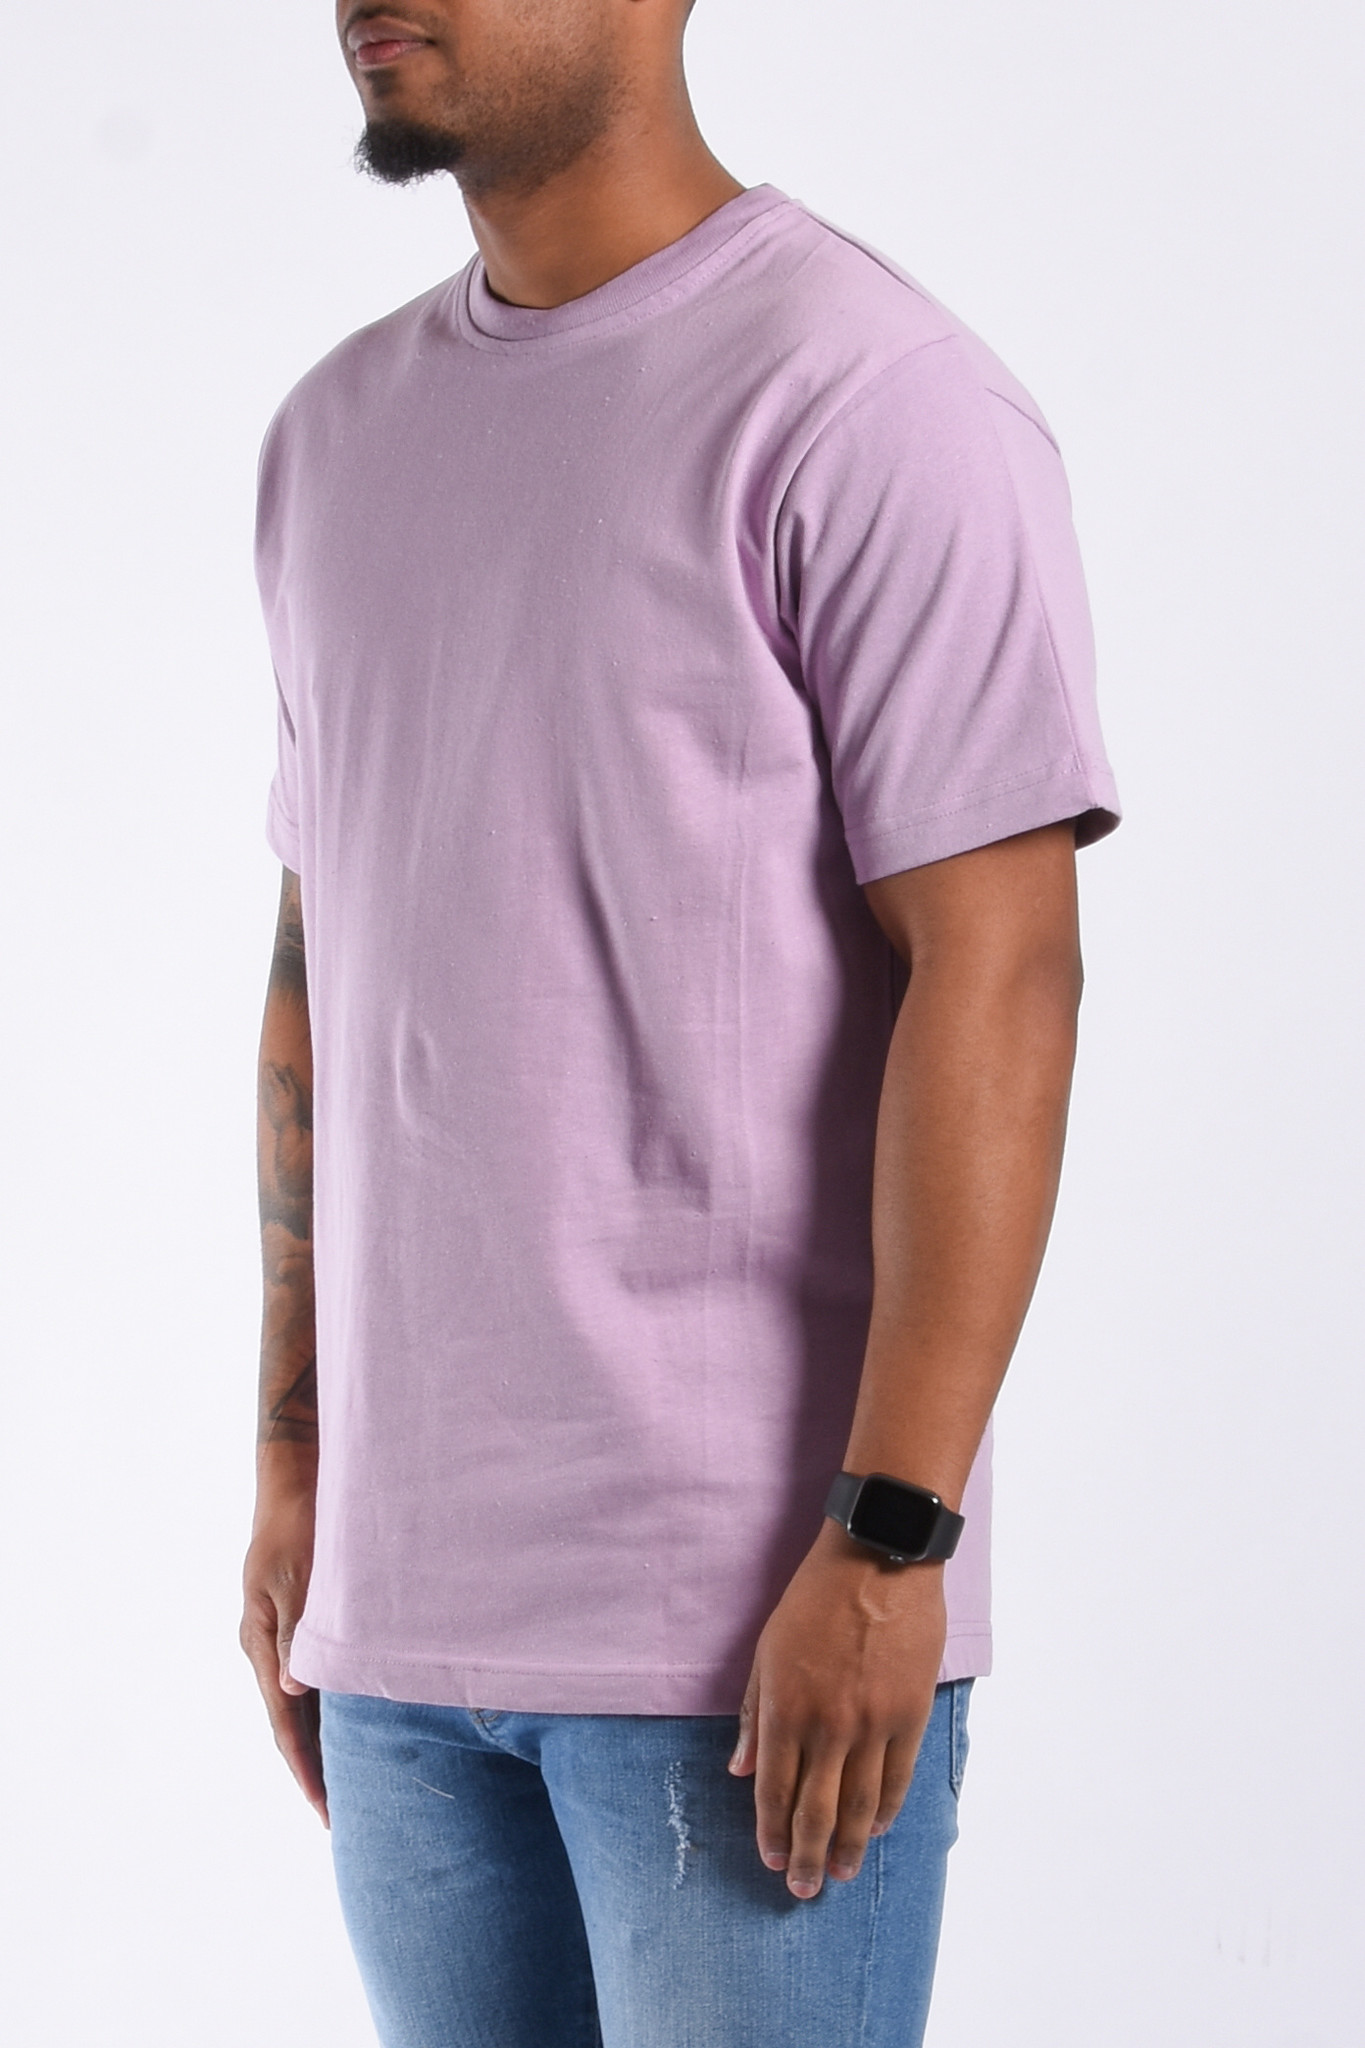 Premium T-Shirt Oversize Loose Fit “Ado” - Yugo Menswear Winkel Heerlen en Webshop